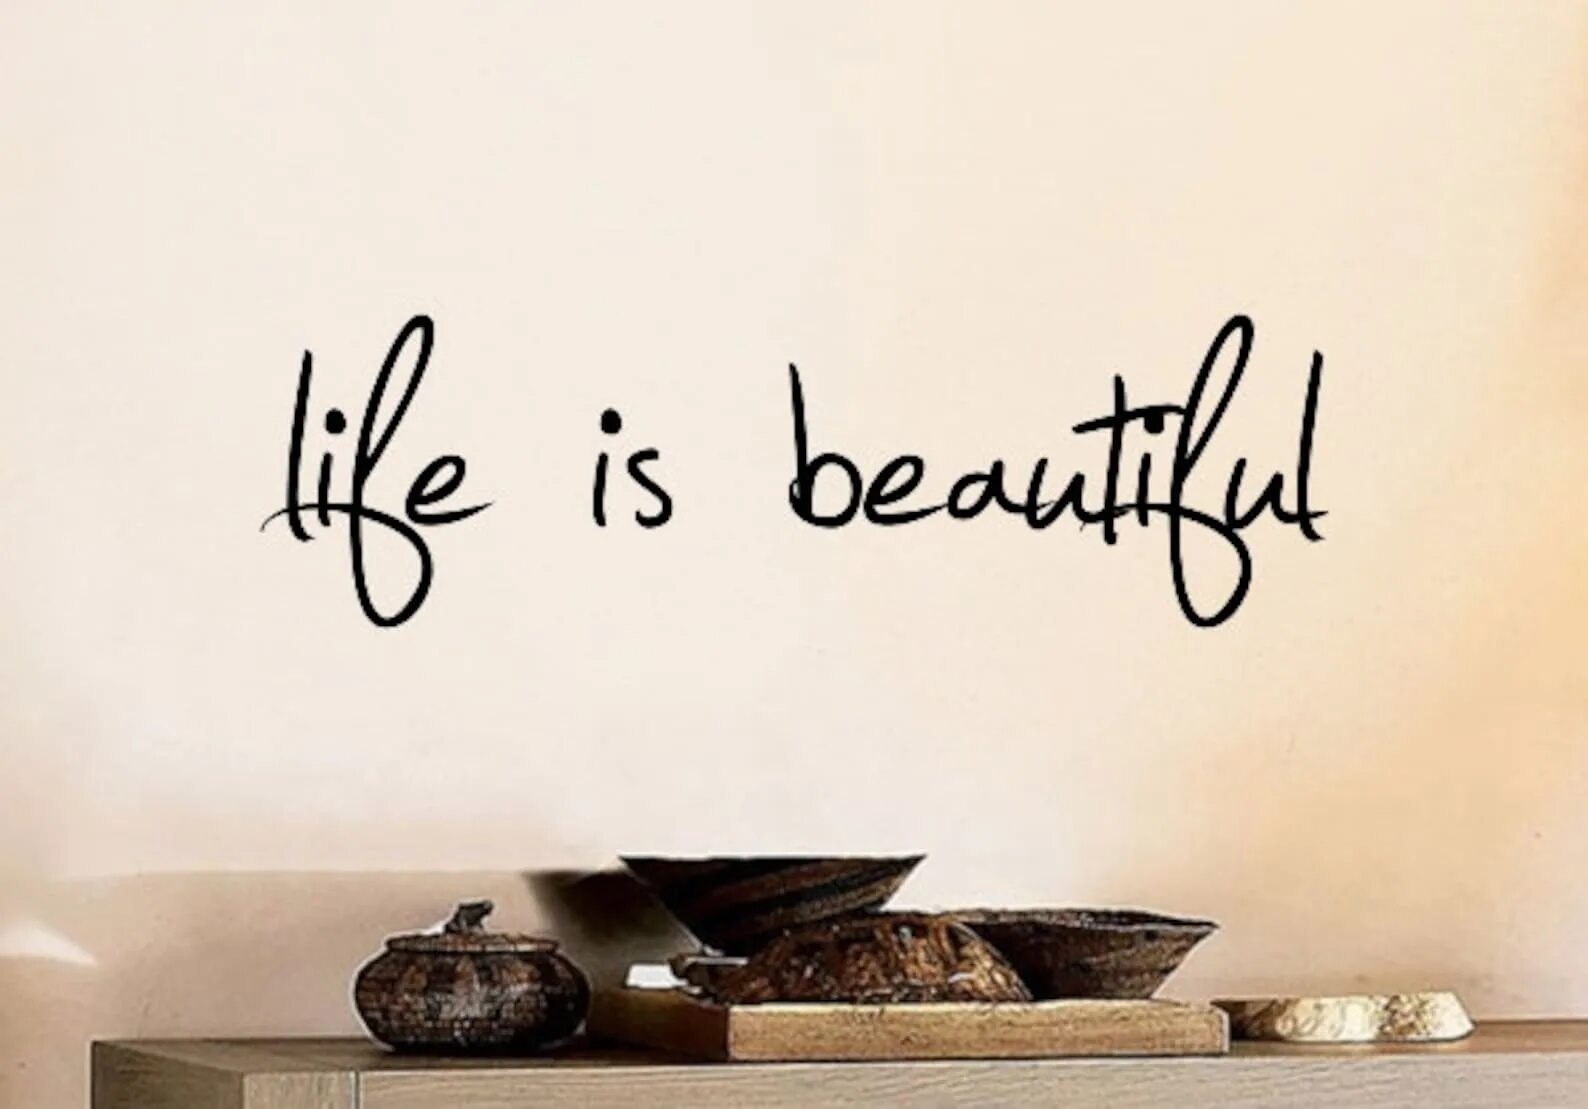 Life надпись. Жизнь прекрасна надпись. Life is beautiful надпись. Life is beautiful красивая надпись. Life is style